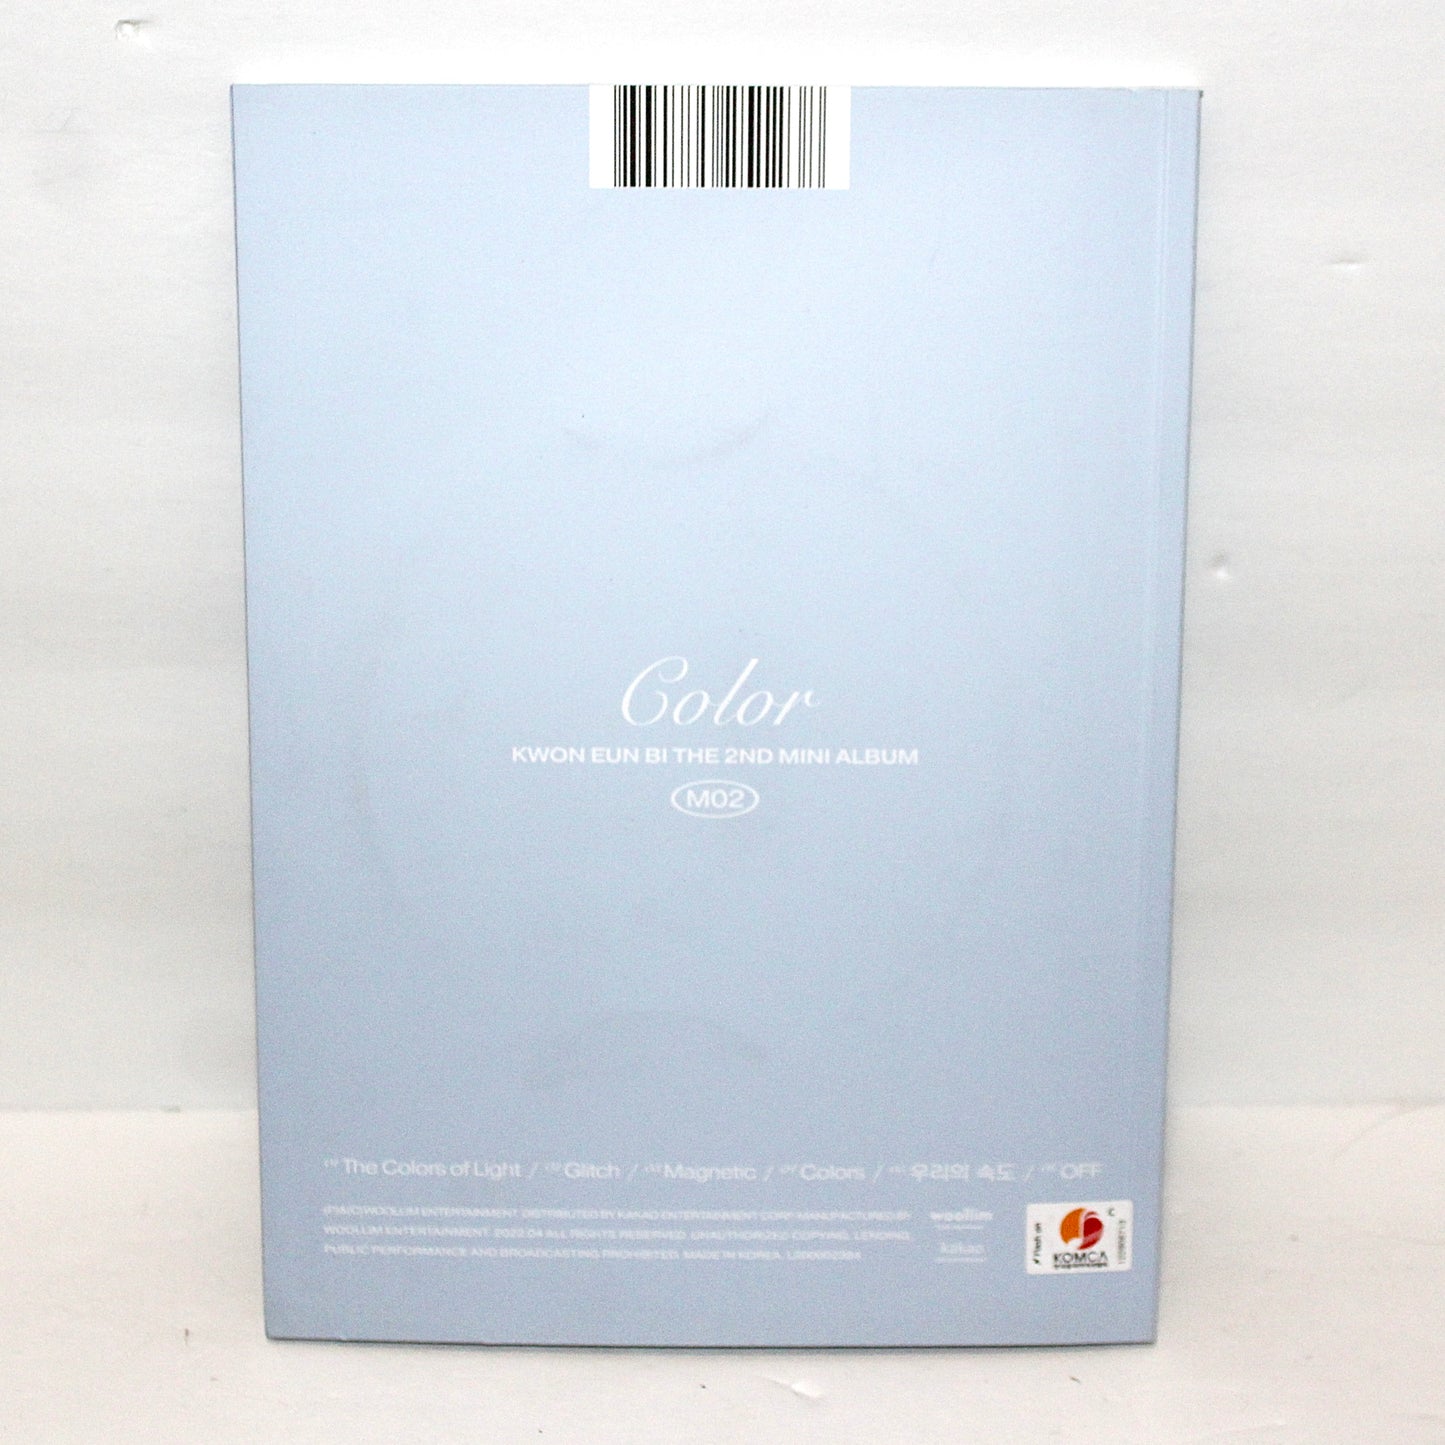 KWON EUNBI 2nd Mini Album: Color | A Ver.